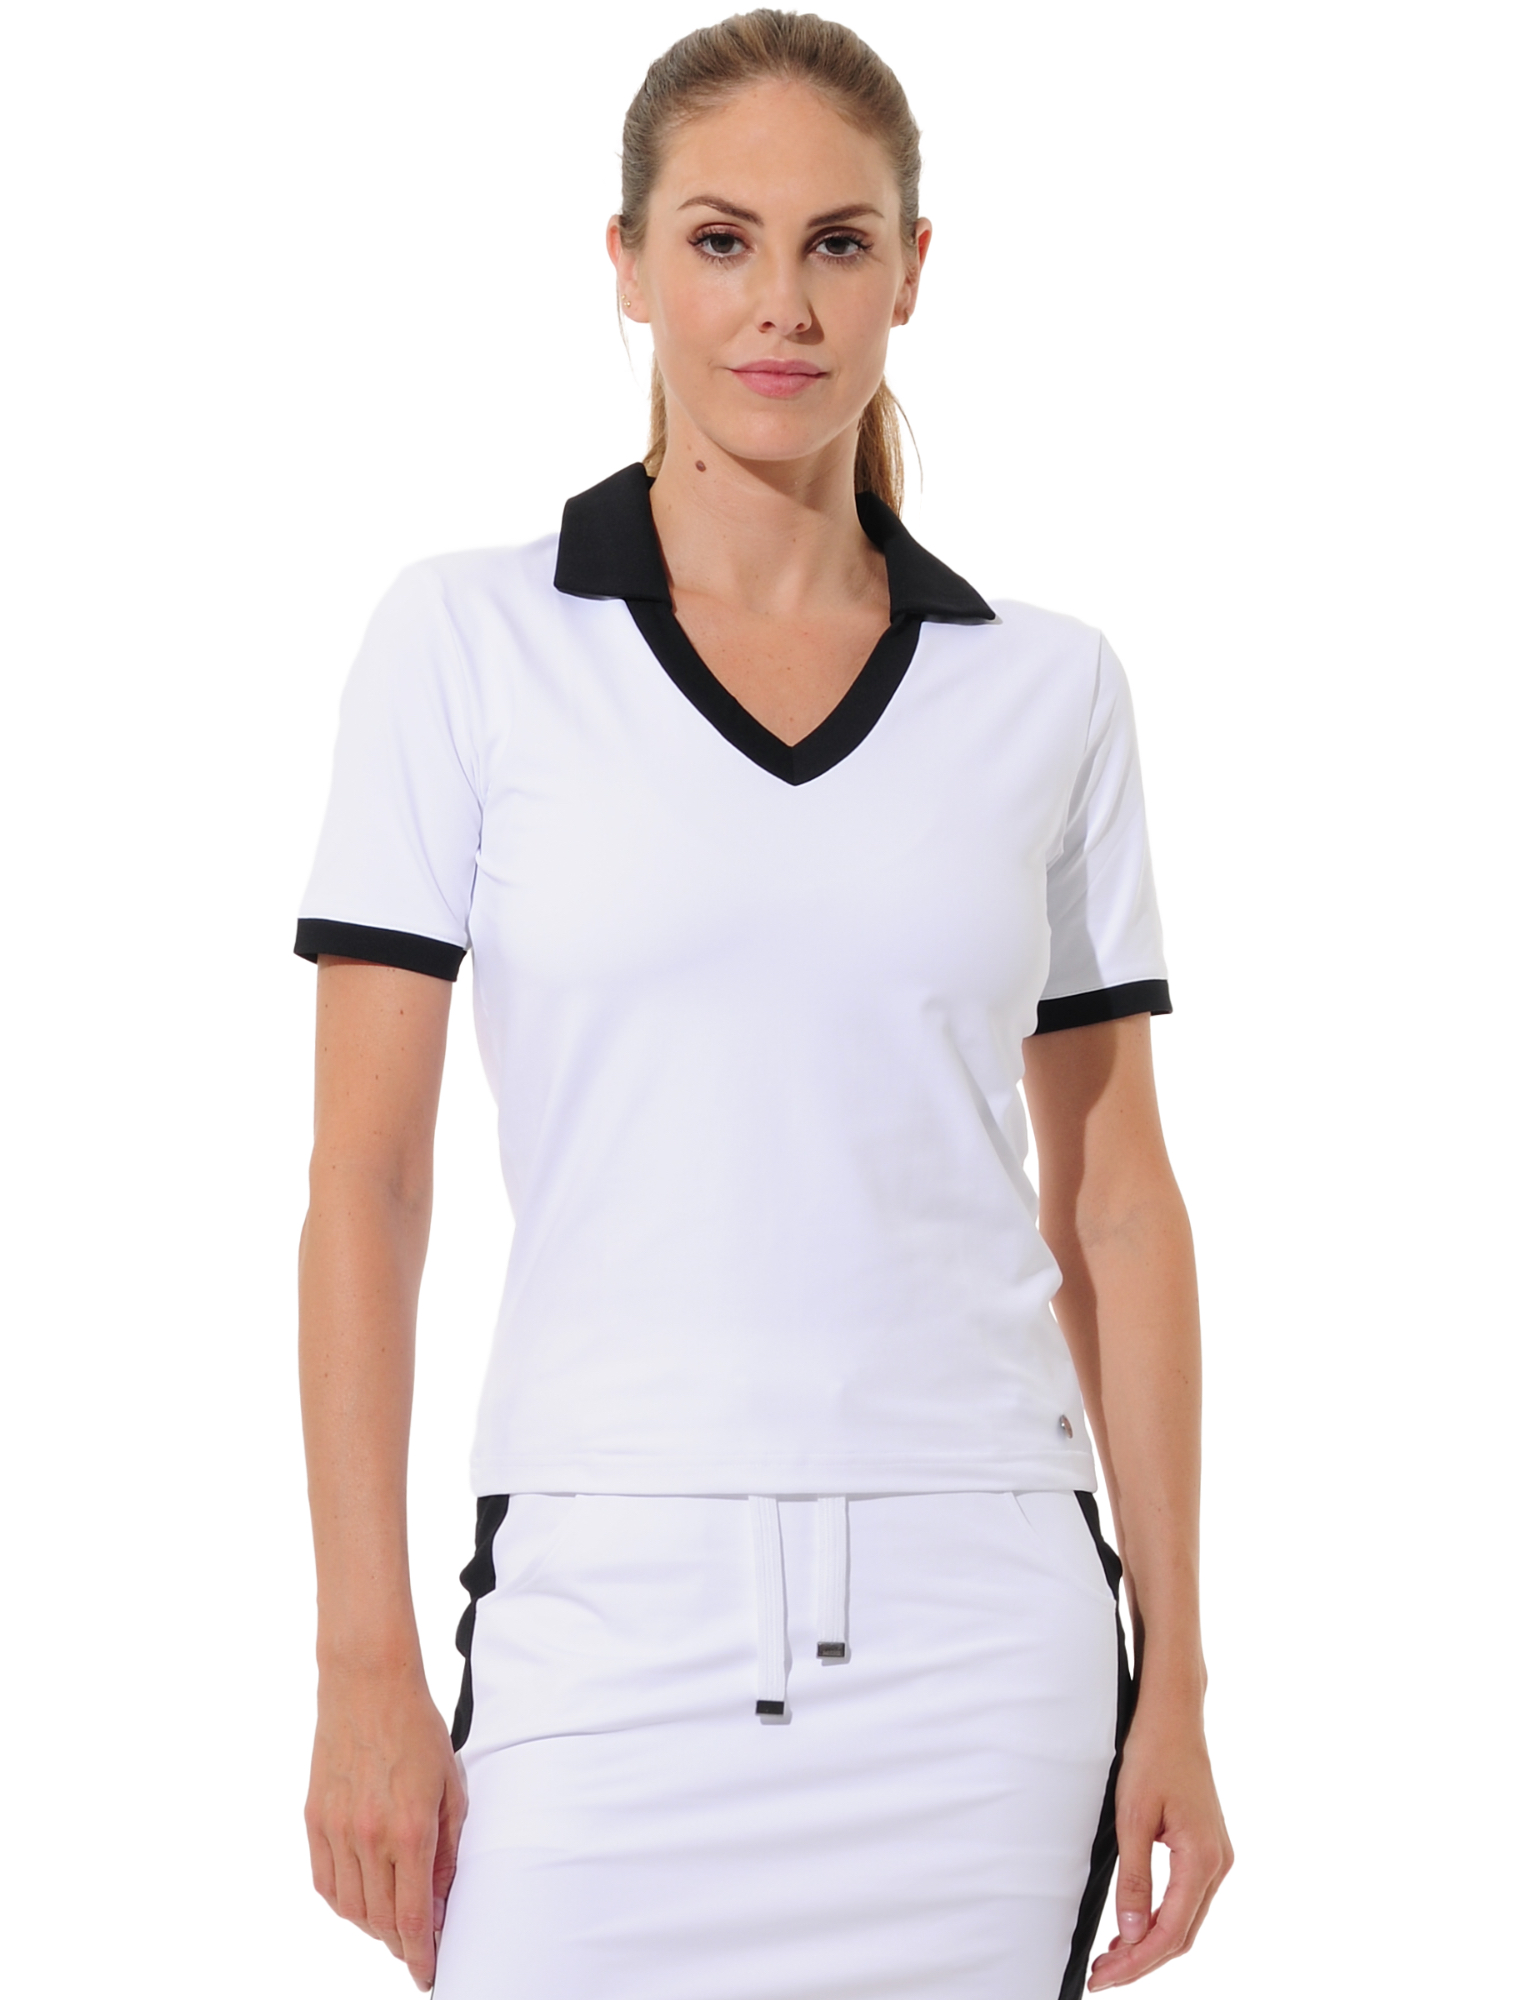 Jersey golf polo shirt white/black